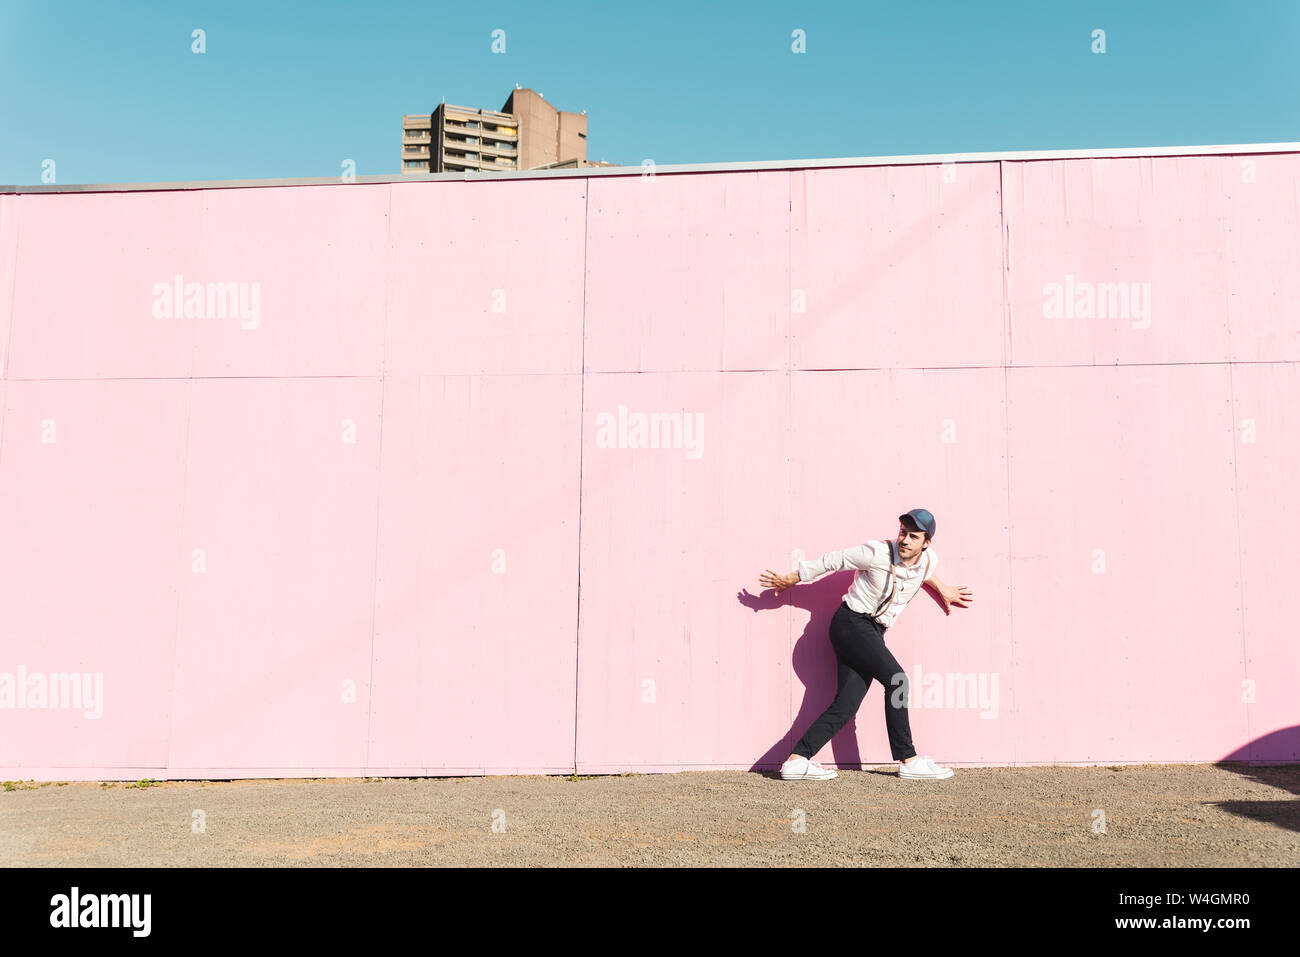 Giovane uomo nella parte anteriore della struttura rosa barriera, traying per sfuggire Foto Stock